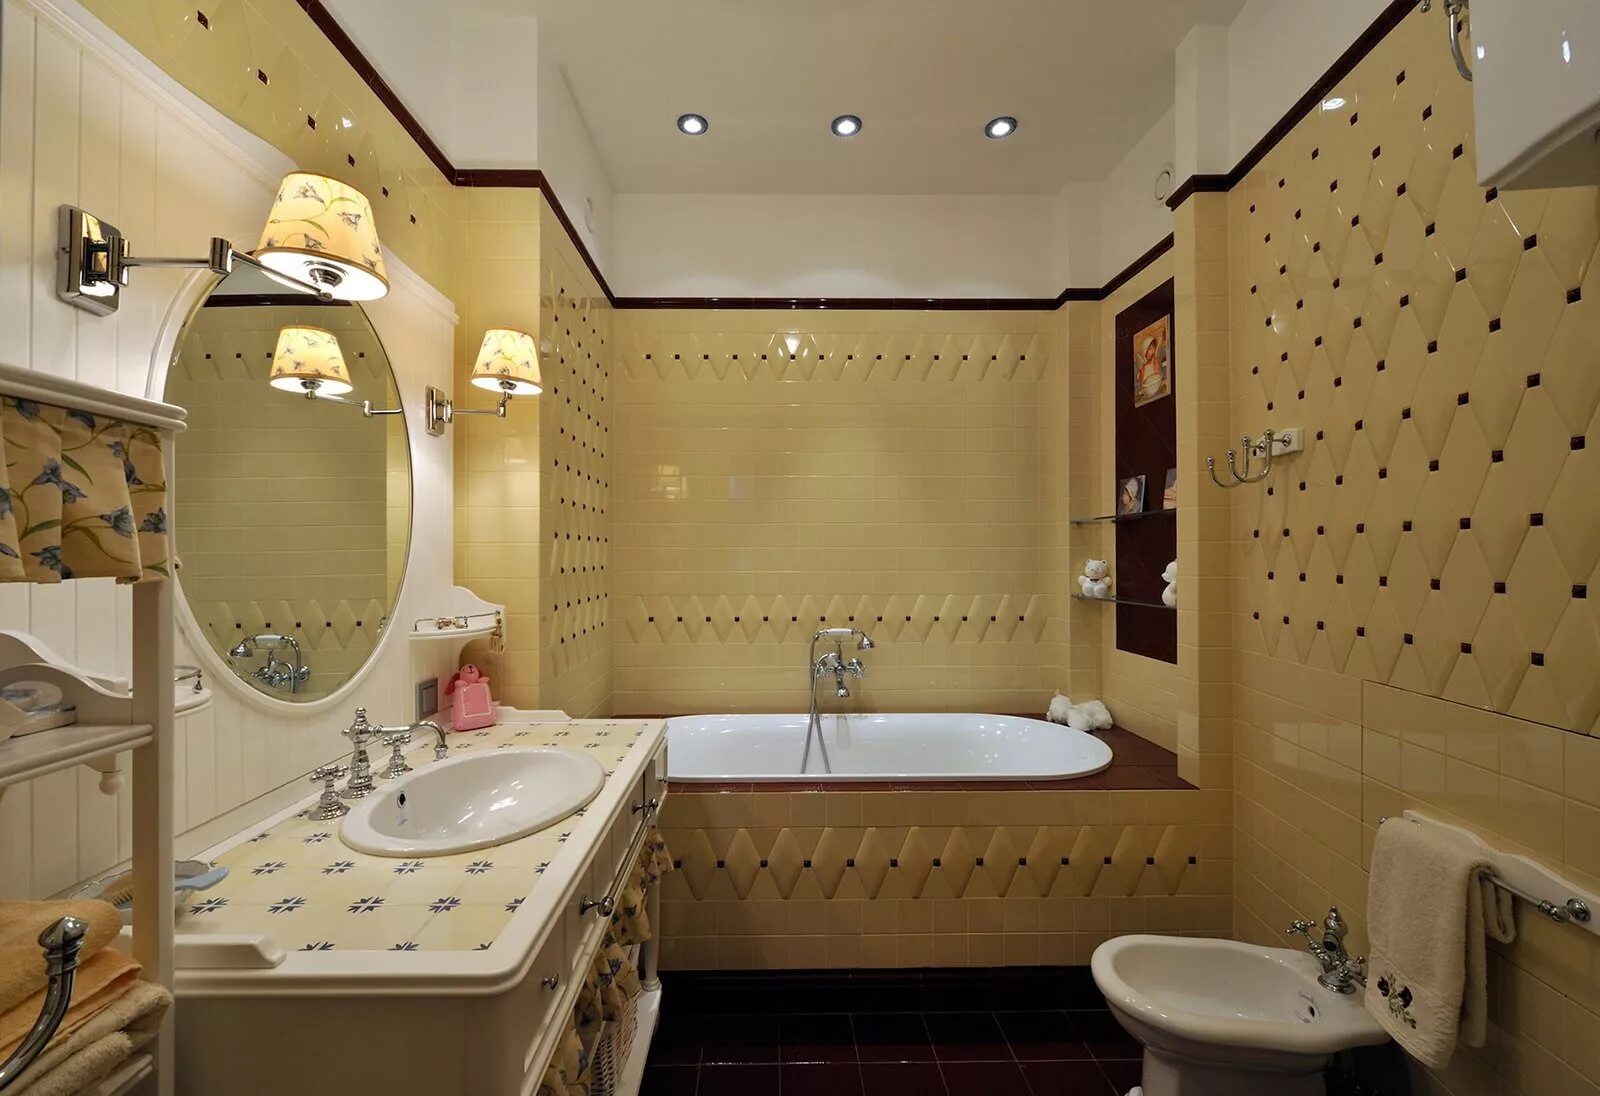 Красивая маленькие ванная. Красивые Ванные комнаты. Интерьер ванной комнаты. Красивые Ванные комнаты в квартире. Дизайнерские Ванные комнаты.